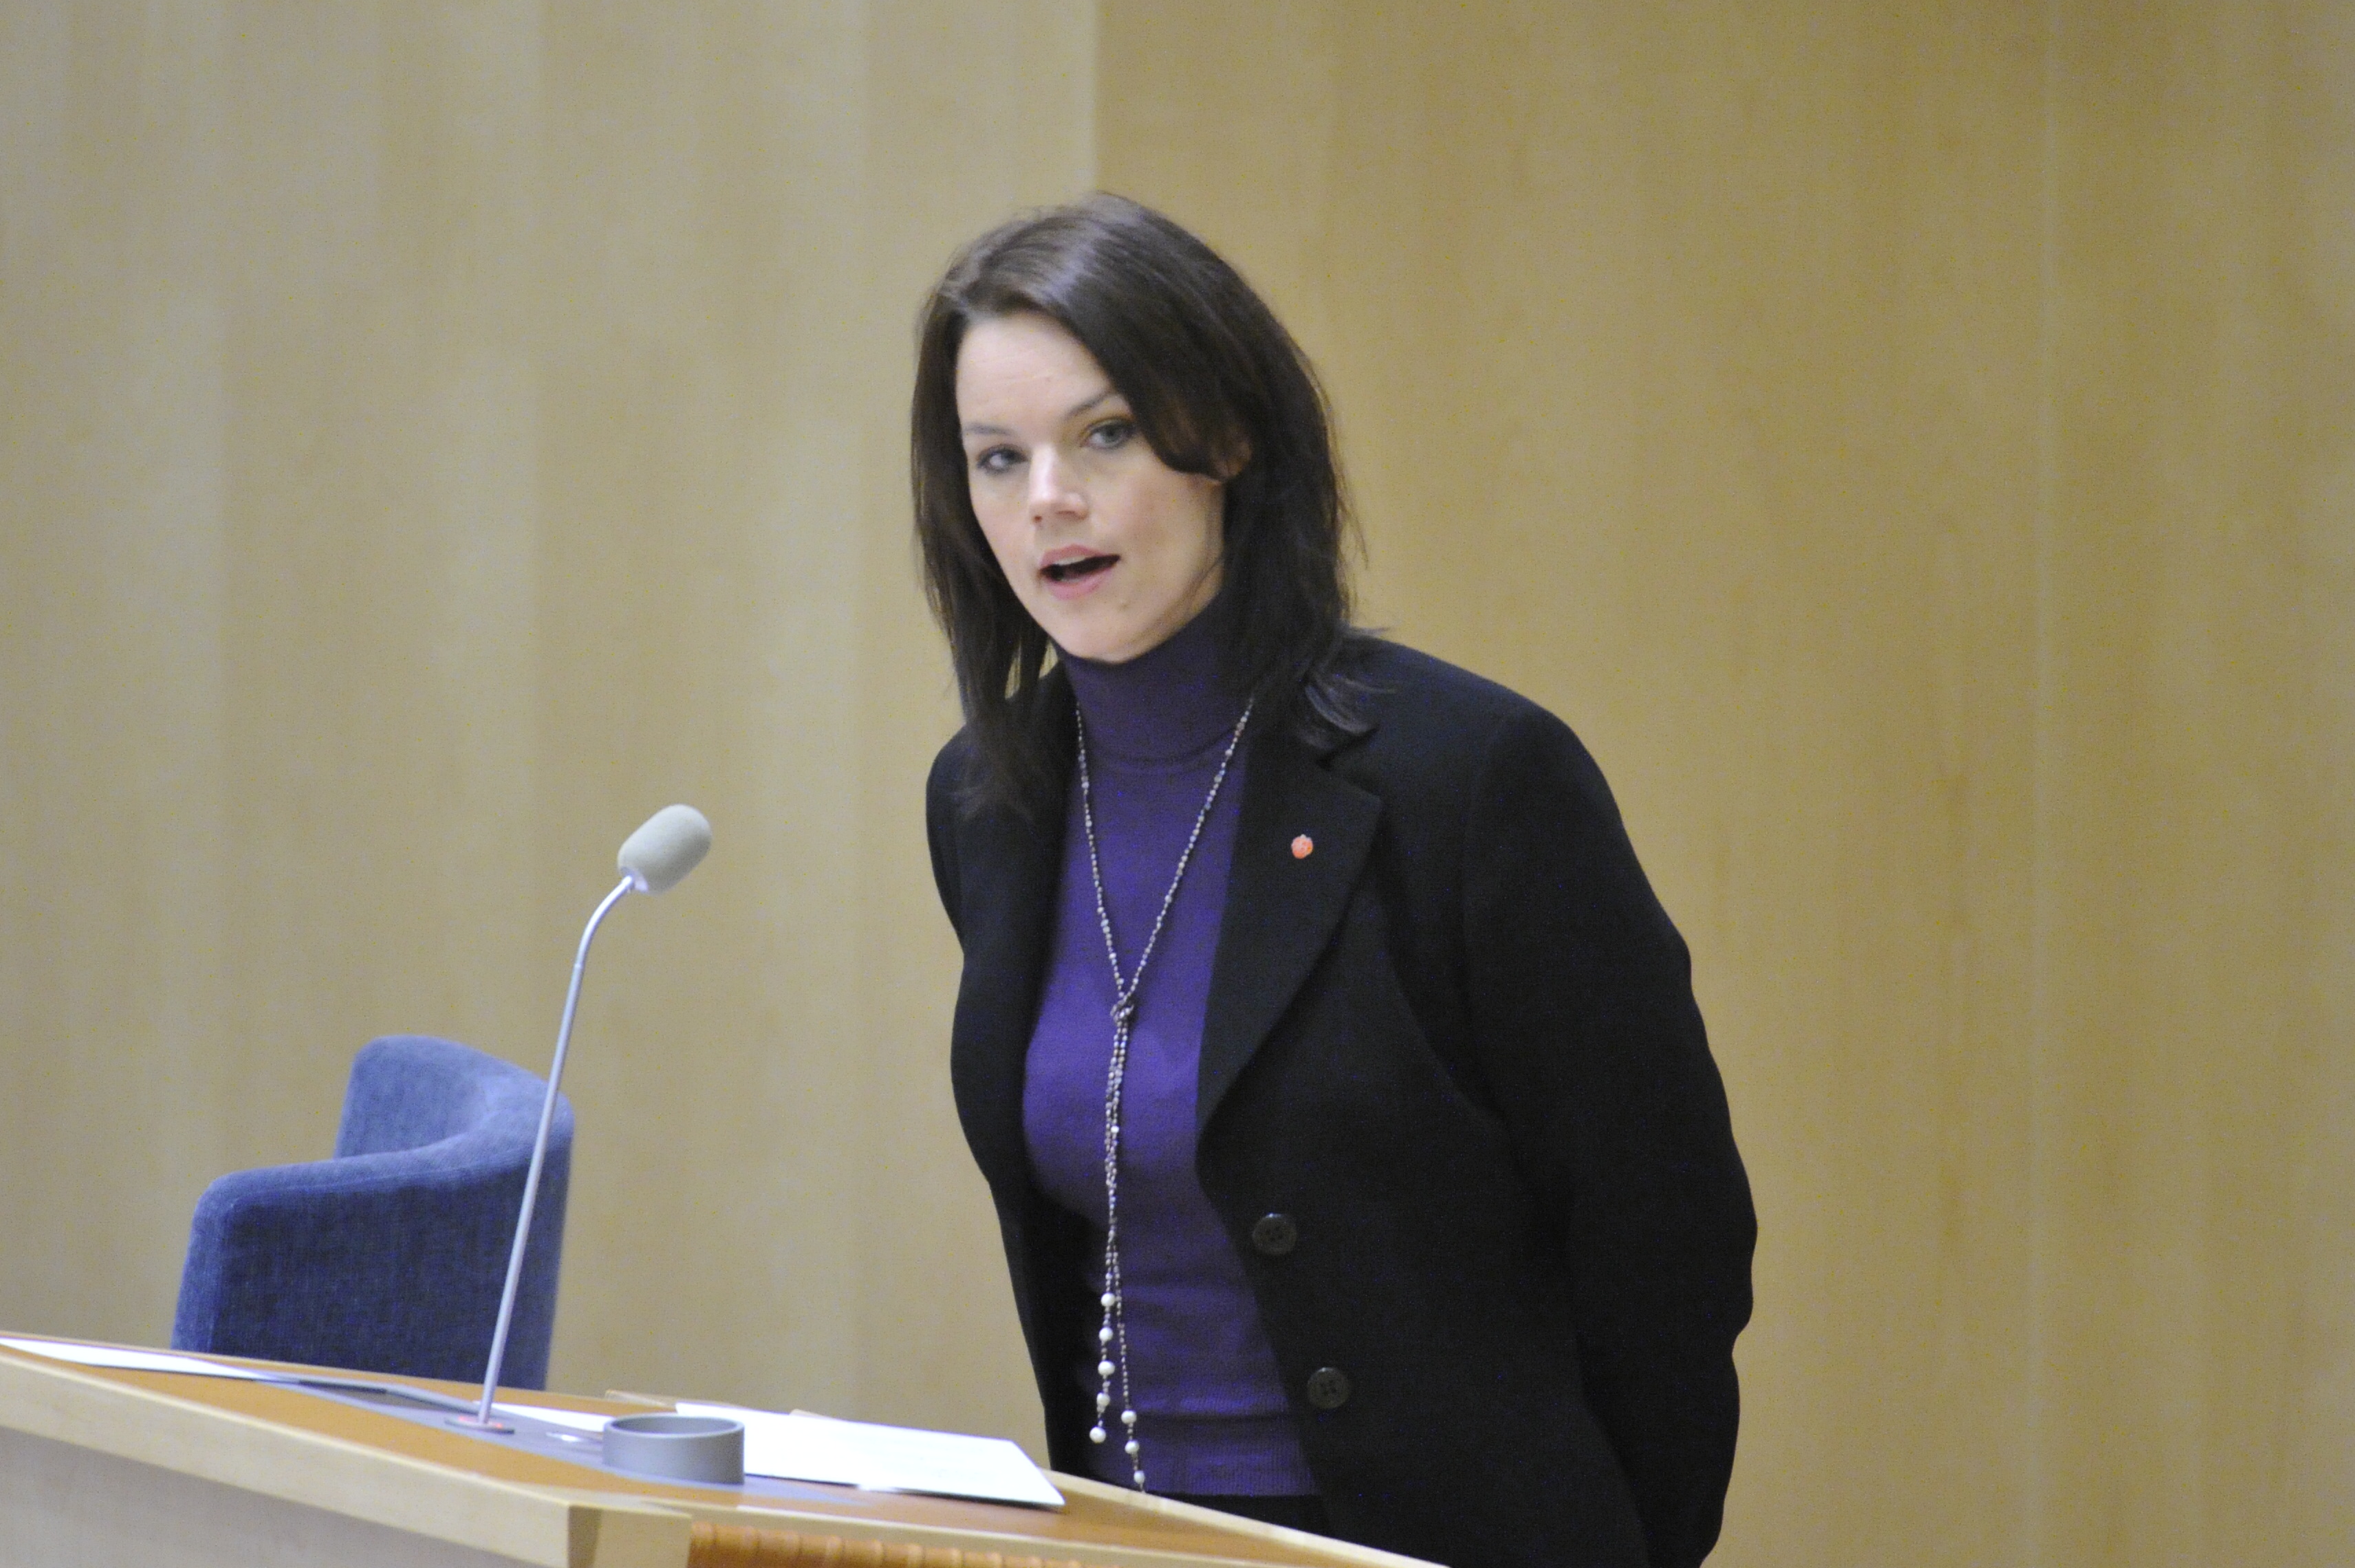 Veronica Palm, Regeringen, Riksdagsvalet 2010, Försäkringskassan, Sjukförsäkring, Utförsäkrad